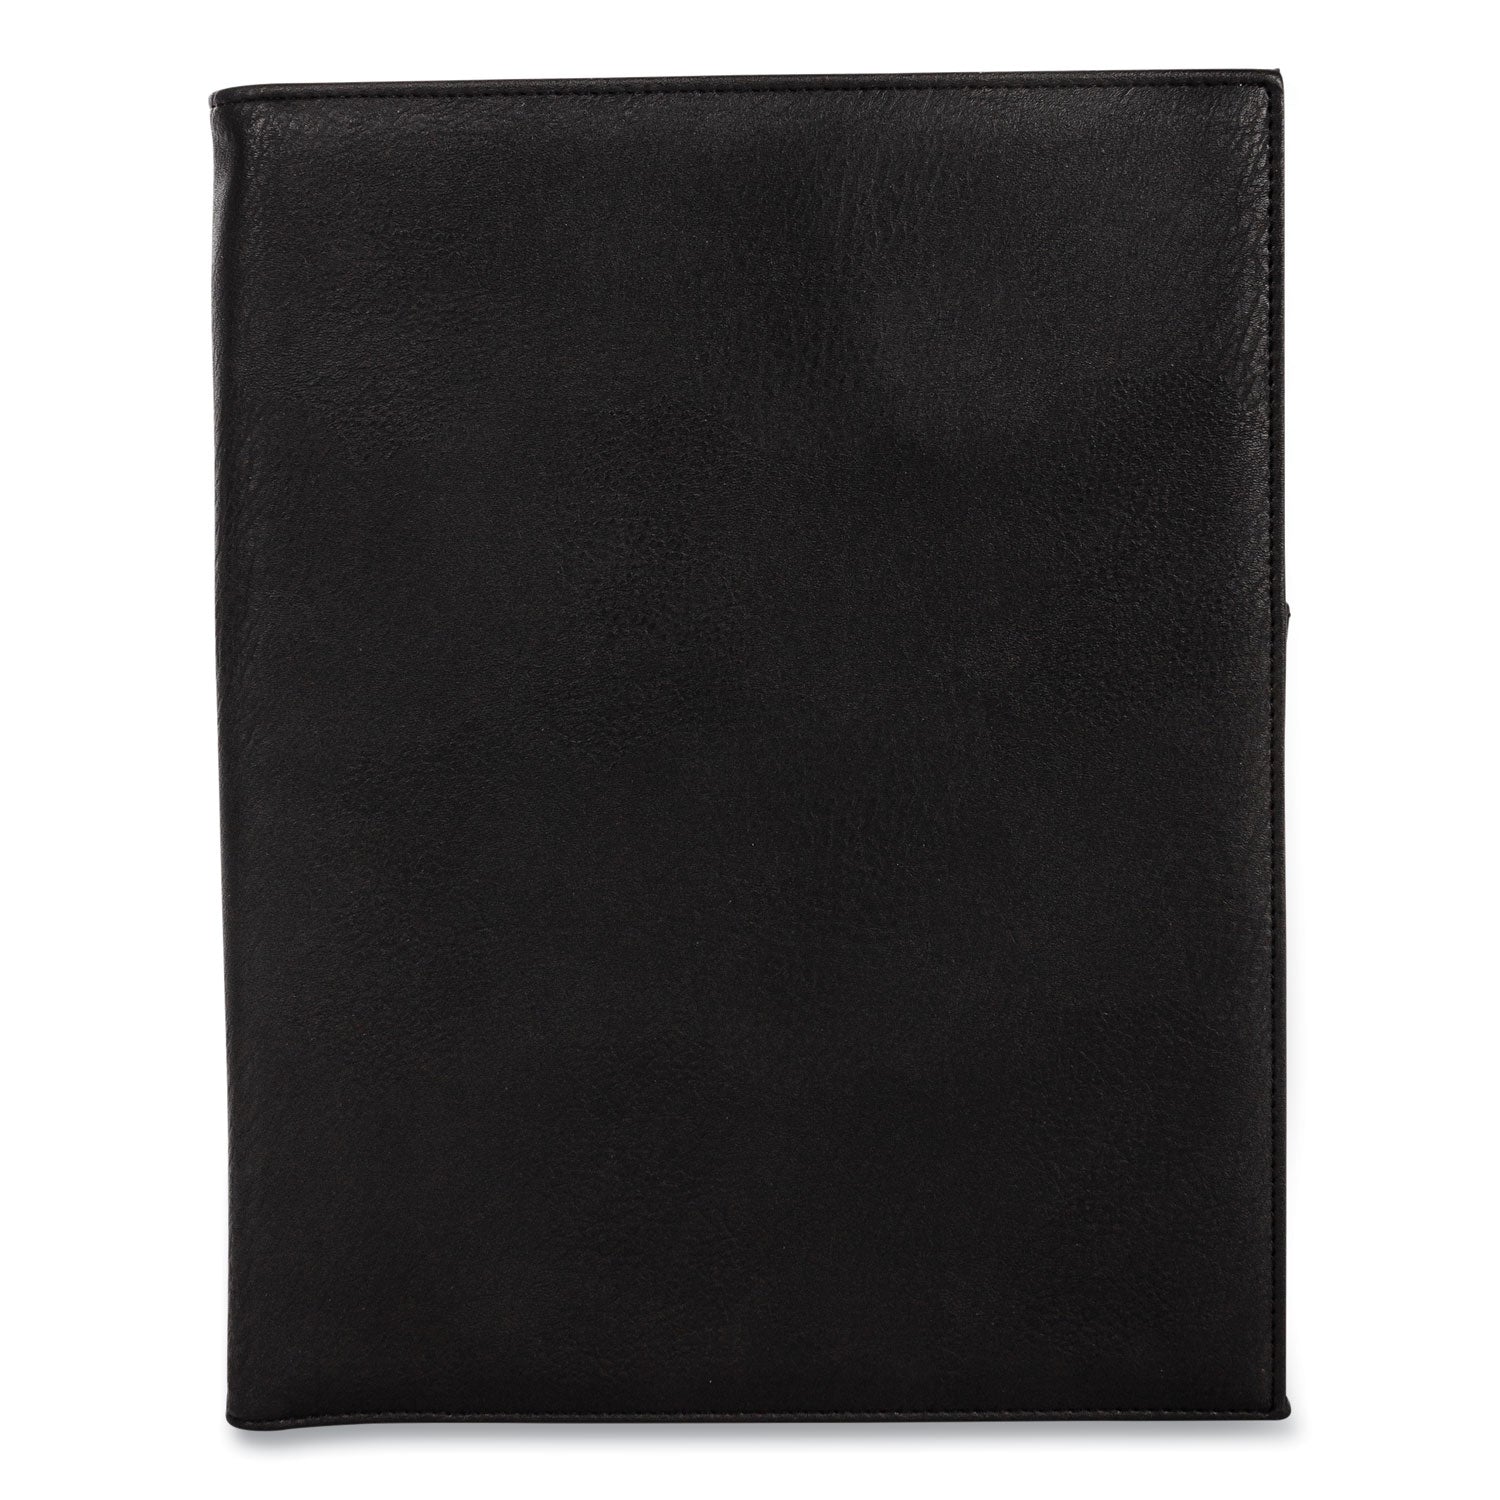 faux-leather-padfolio-9-x-12-pad-975-x-125-black_bnd5042bsblack - 1